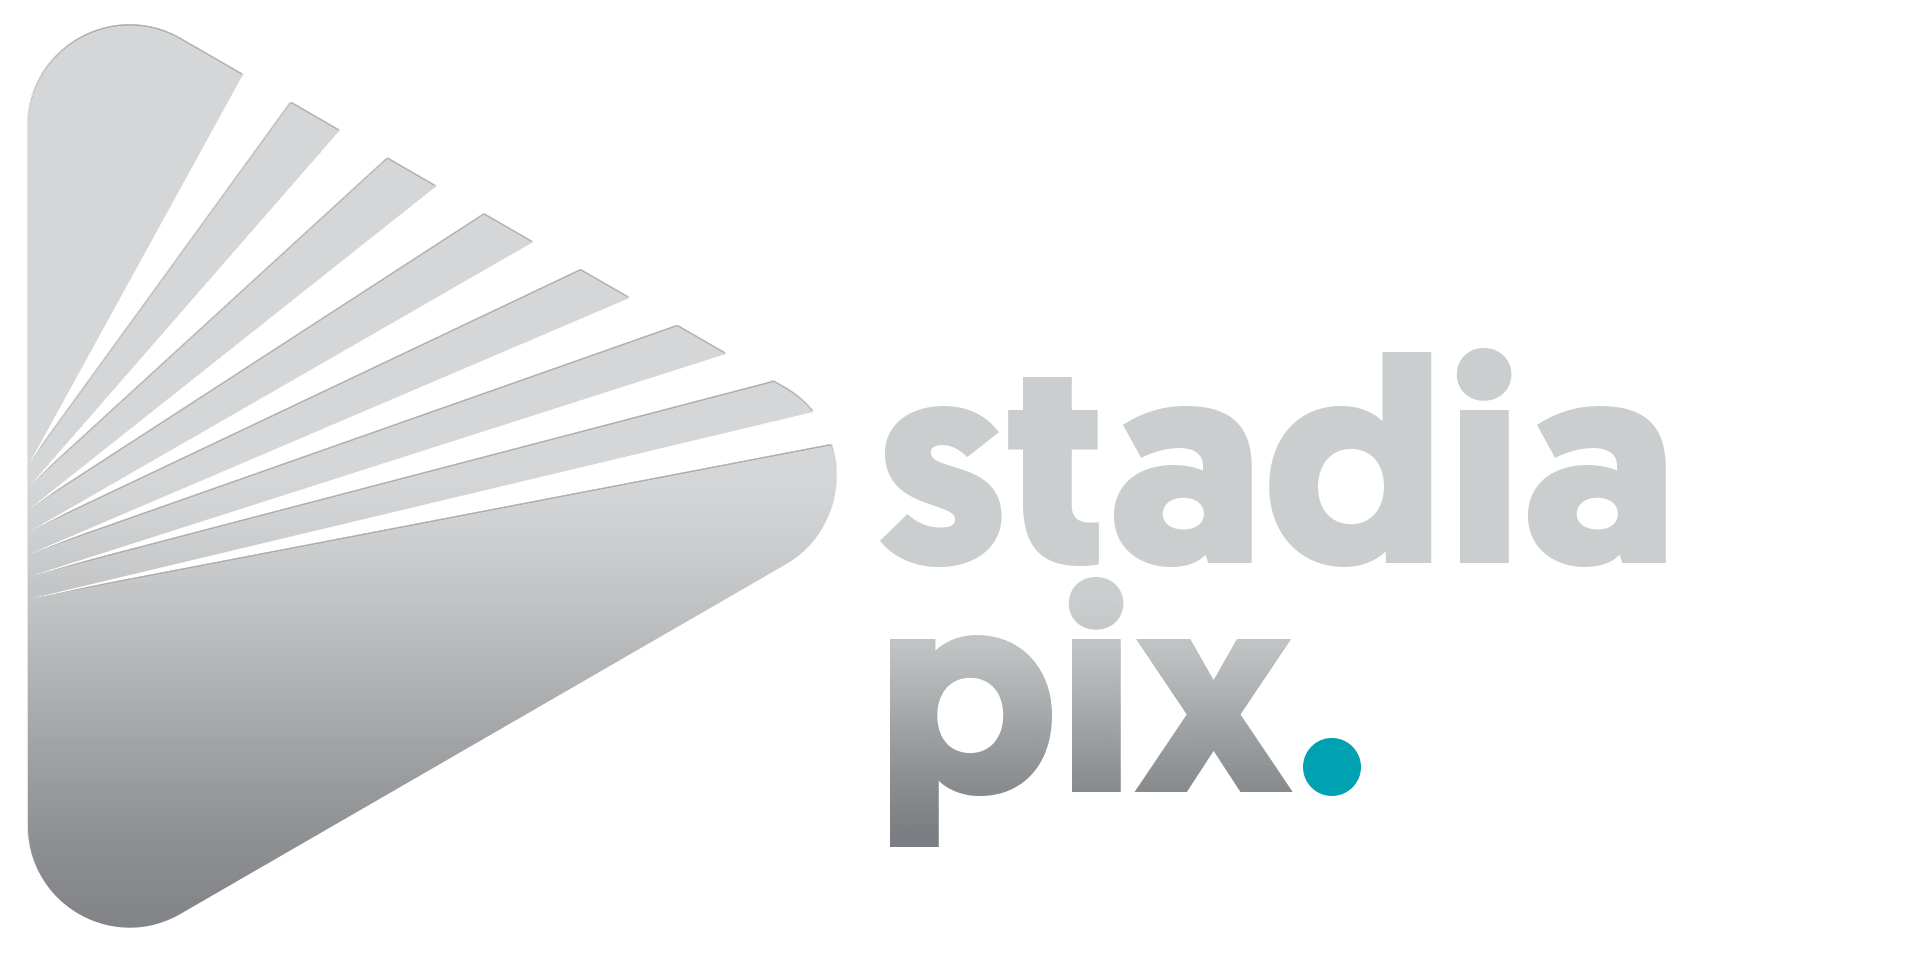 Stadia Pix